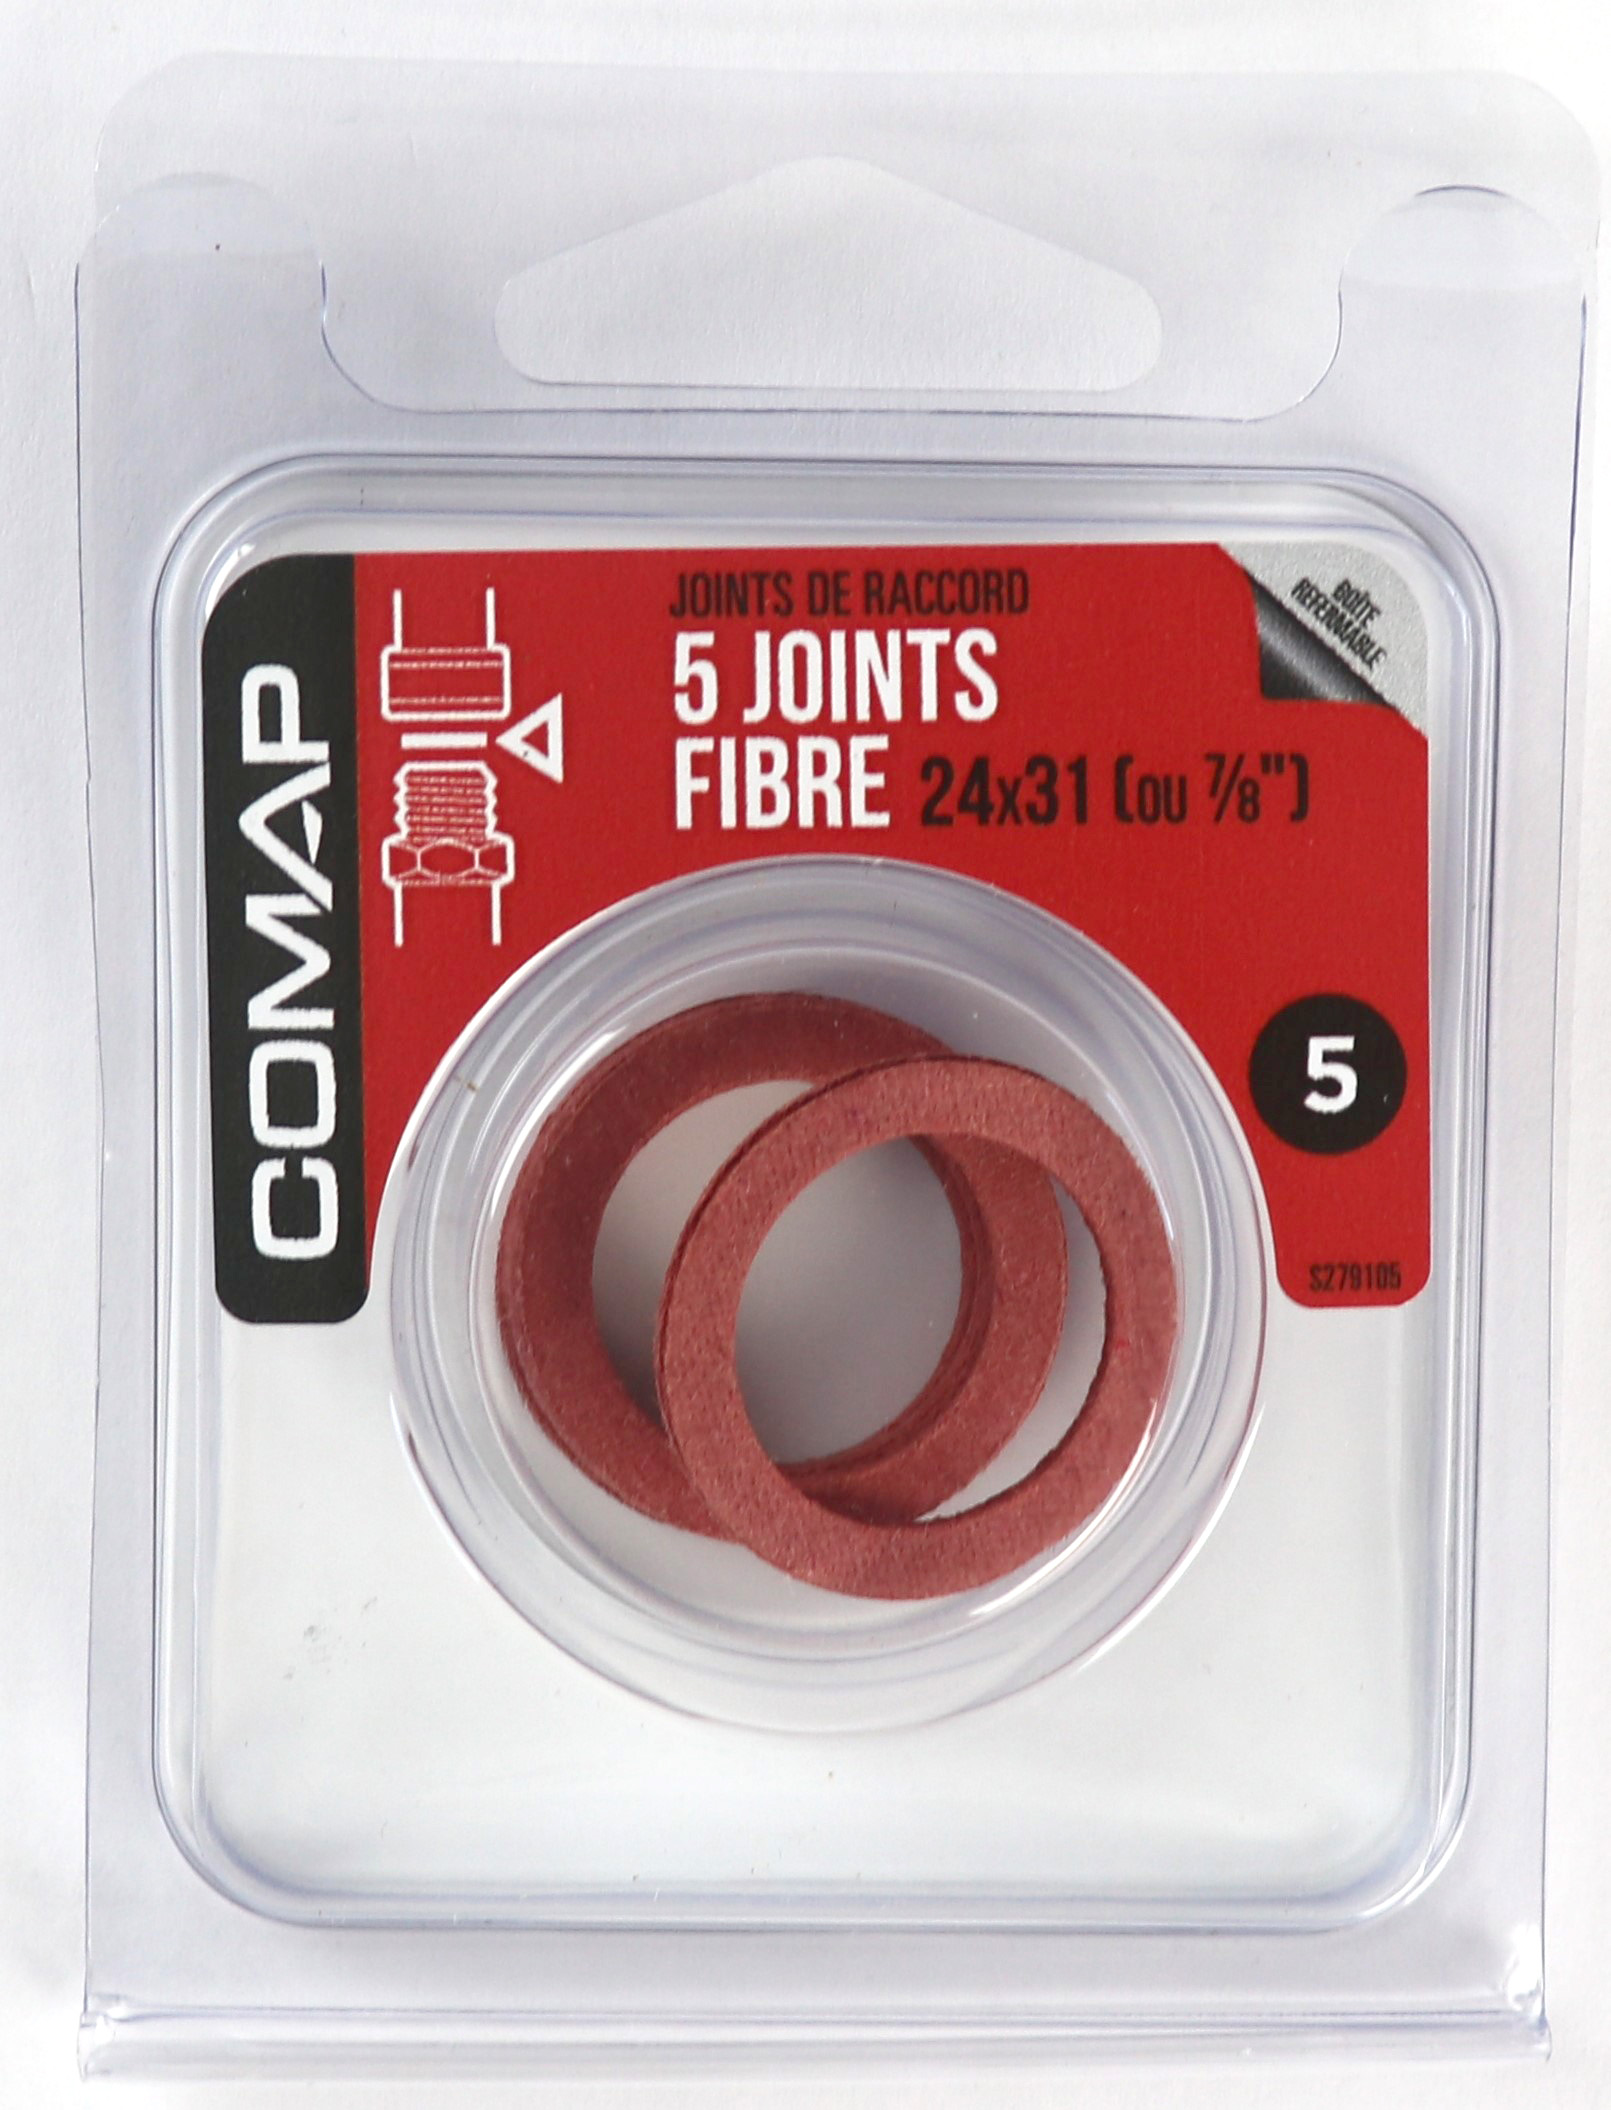 5 Joints fibre 24x31 - COMAP